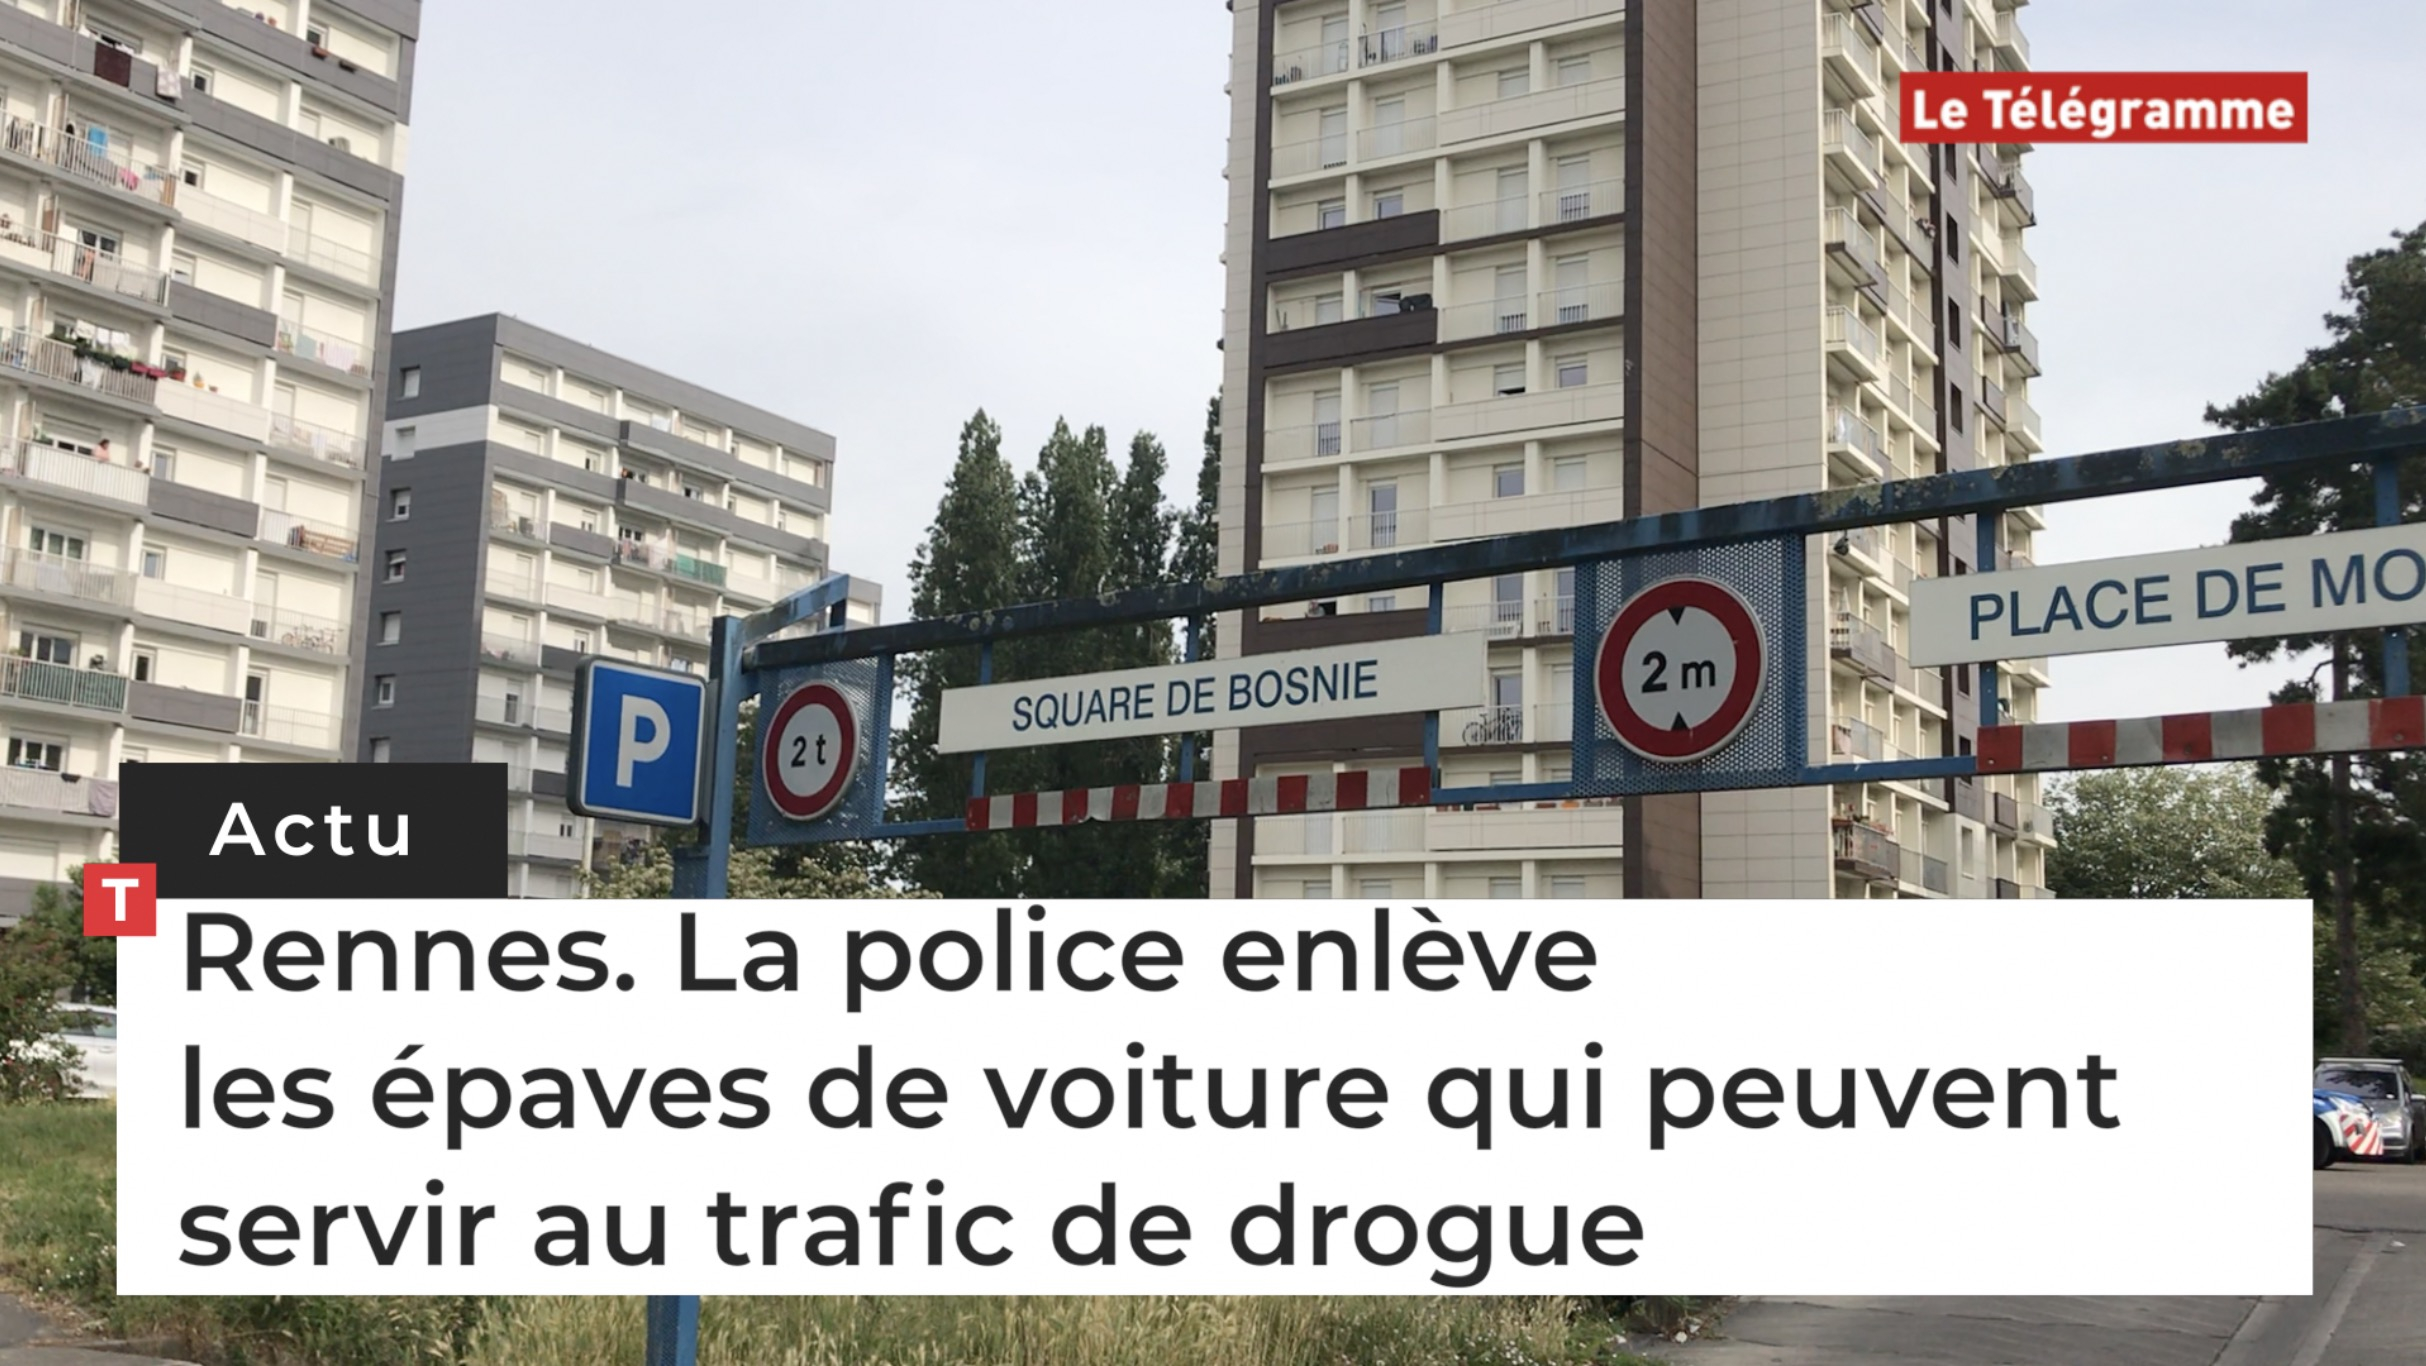 Rennes. La police enlève les épaves de voiture qui peuvent servir au trafic de drogue (Le Télégramme)